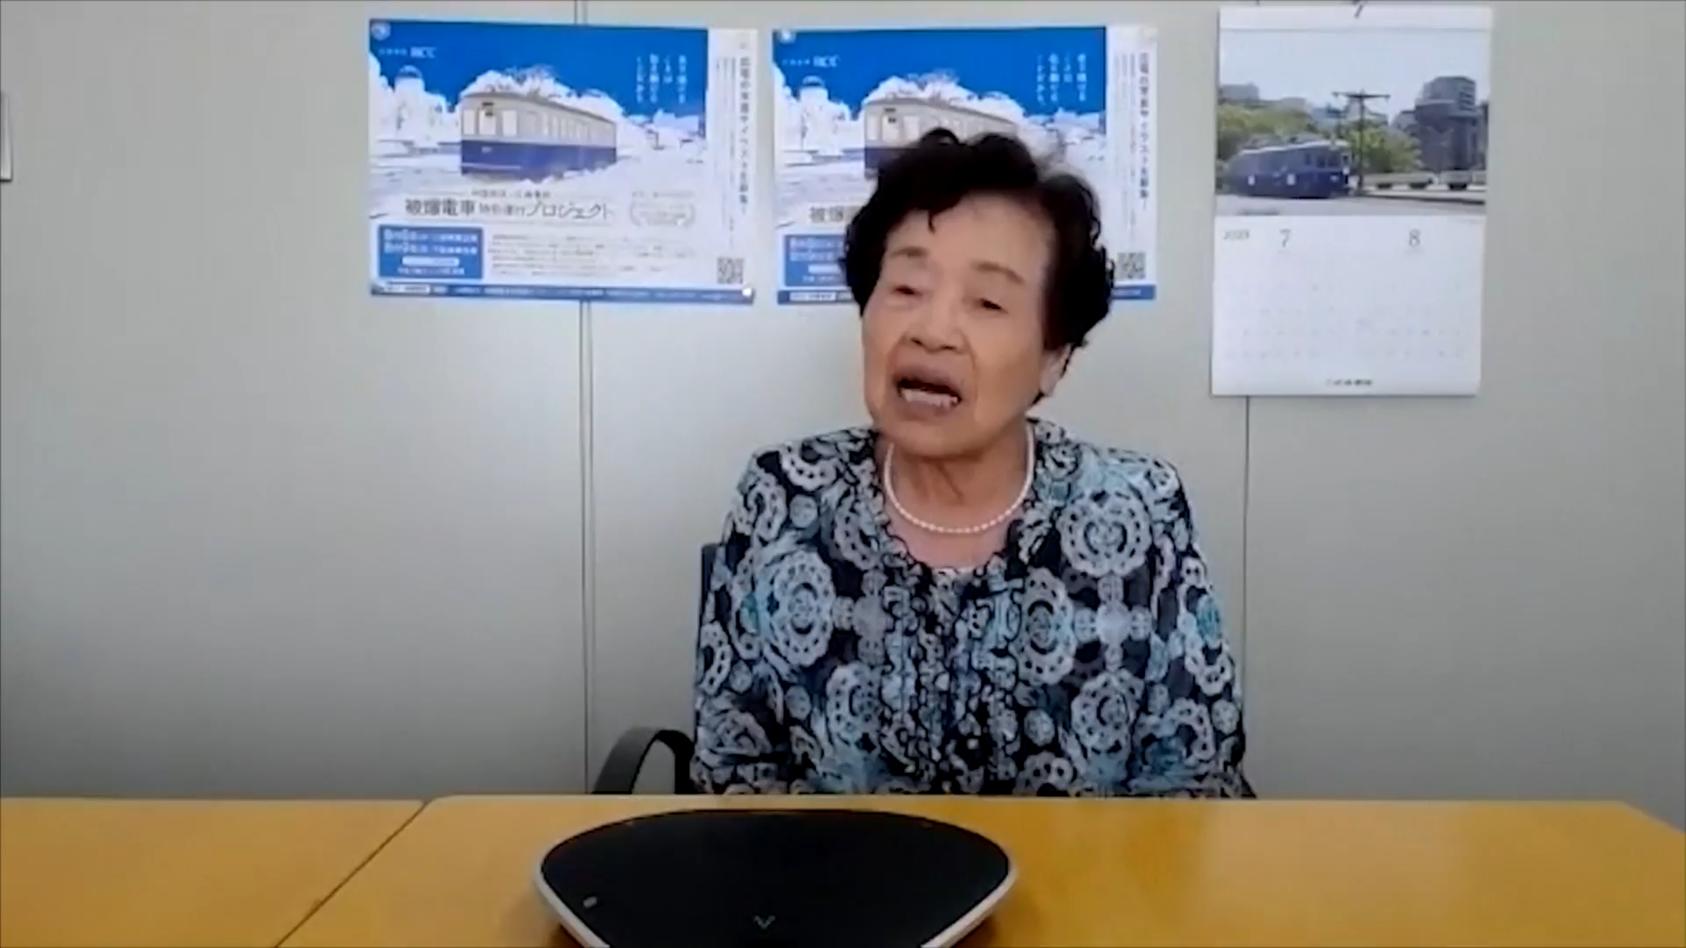 Zeitzeugin erinnert sich an Atombombenabwurf in Hiroshima "Wir sind sofort unter den Tisch gesprungen"